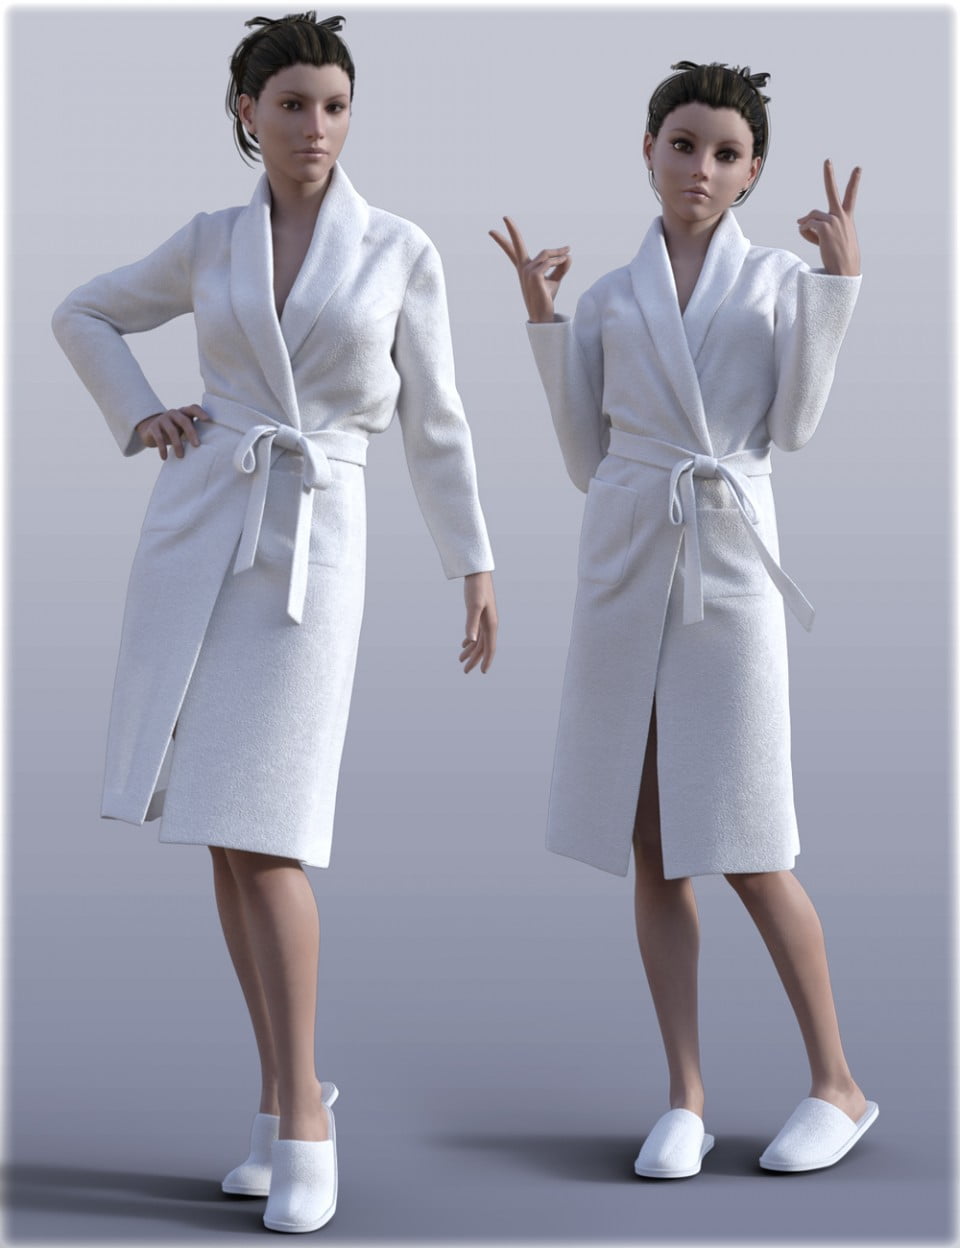 00-main-hc-bathrobe-set-for-genesis-3-females-daz3d